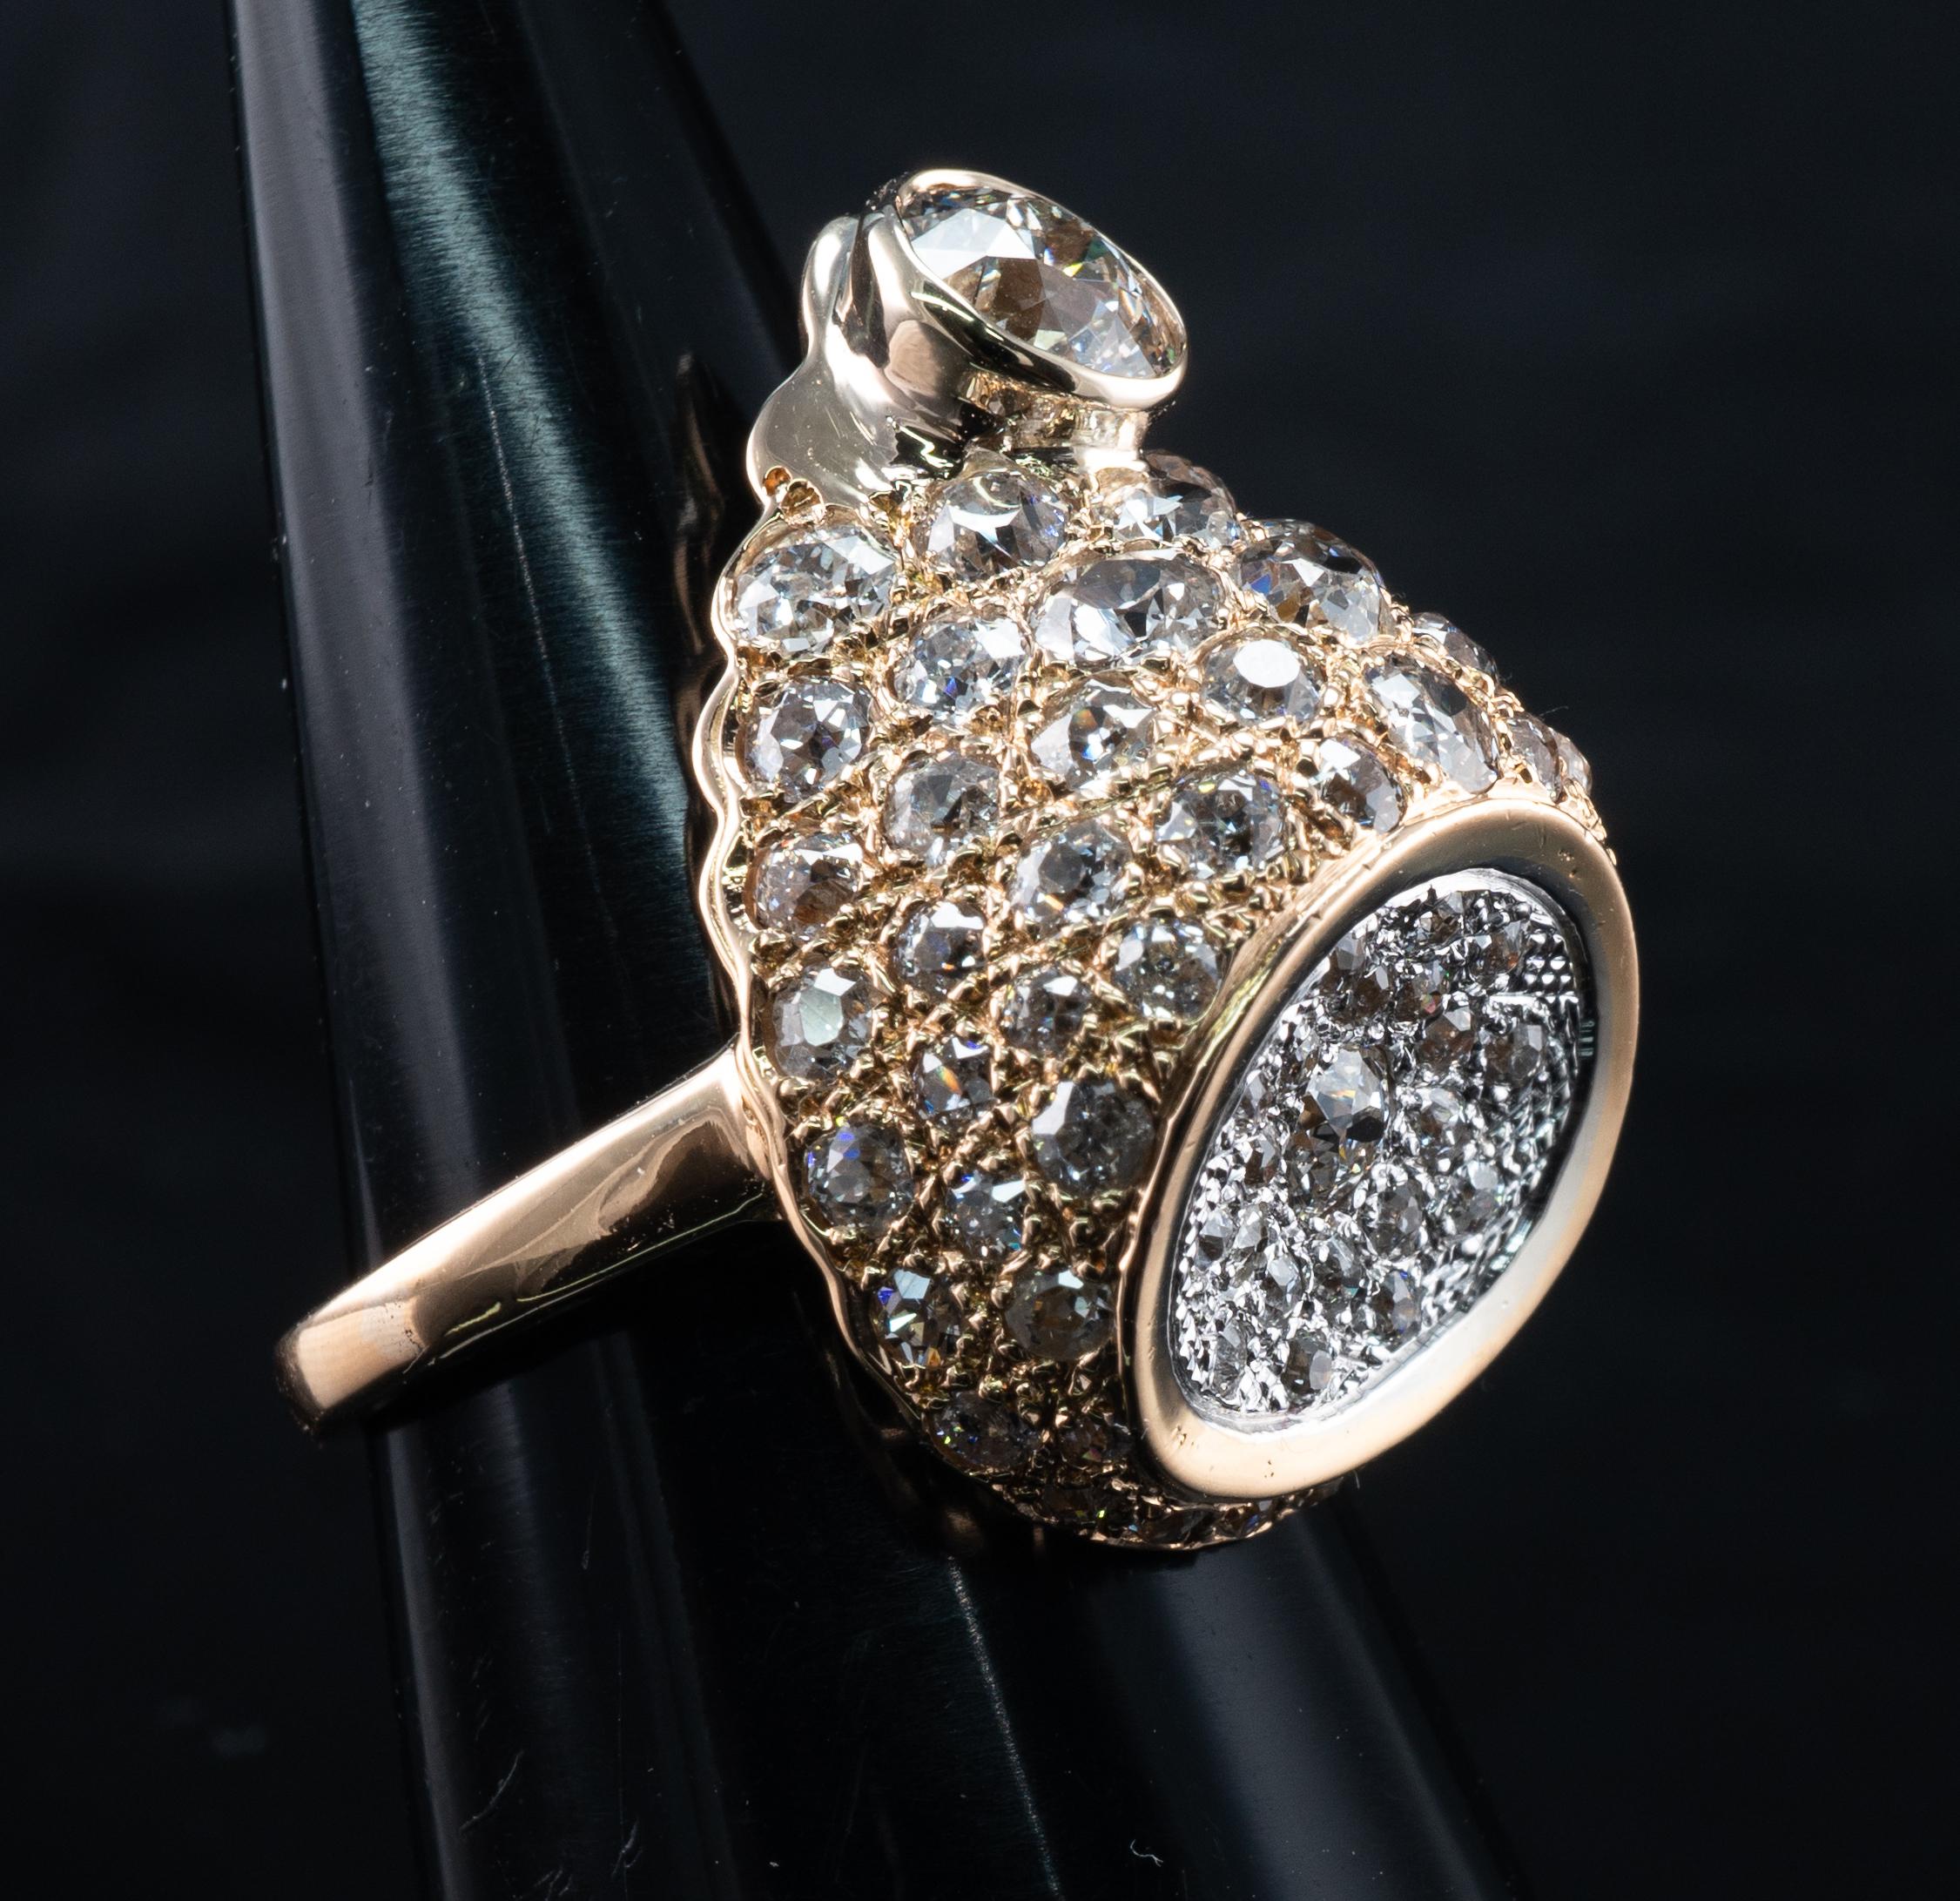 Europäischer Diamantring 14K Gold Cocktail 3 D 4,60 TDW Vintage Estate mit europäischem Schliff

Dieser wunderschöne, ungewöhnliche 3-D-Ring im Vintage-Stil ist aus massivem 14-karätigem Gelbgold mit einem leichten Unterton von Roségold gefertigt.